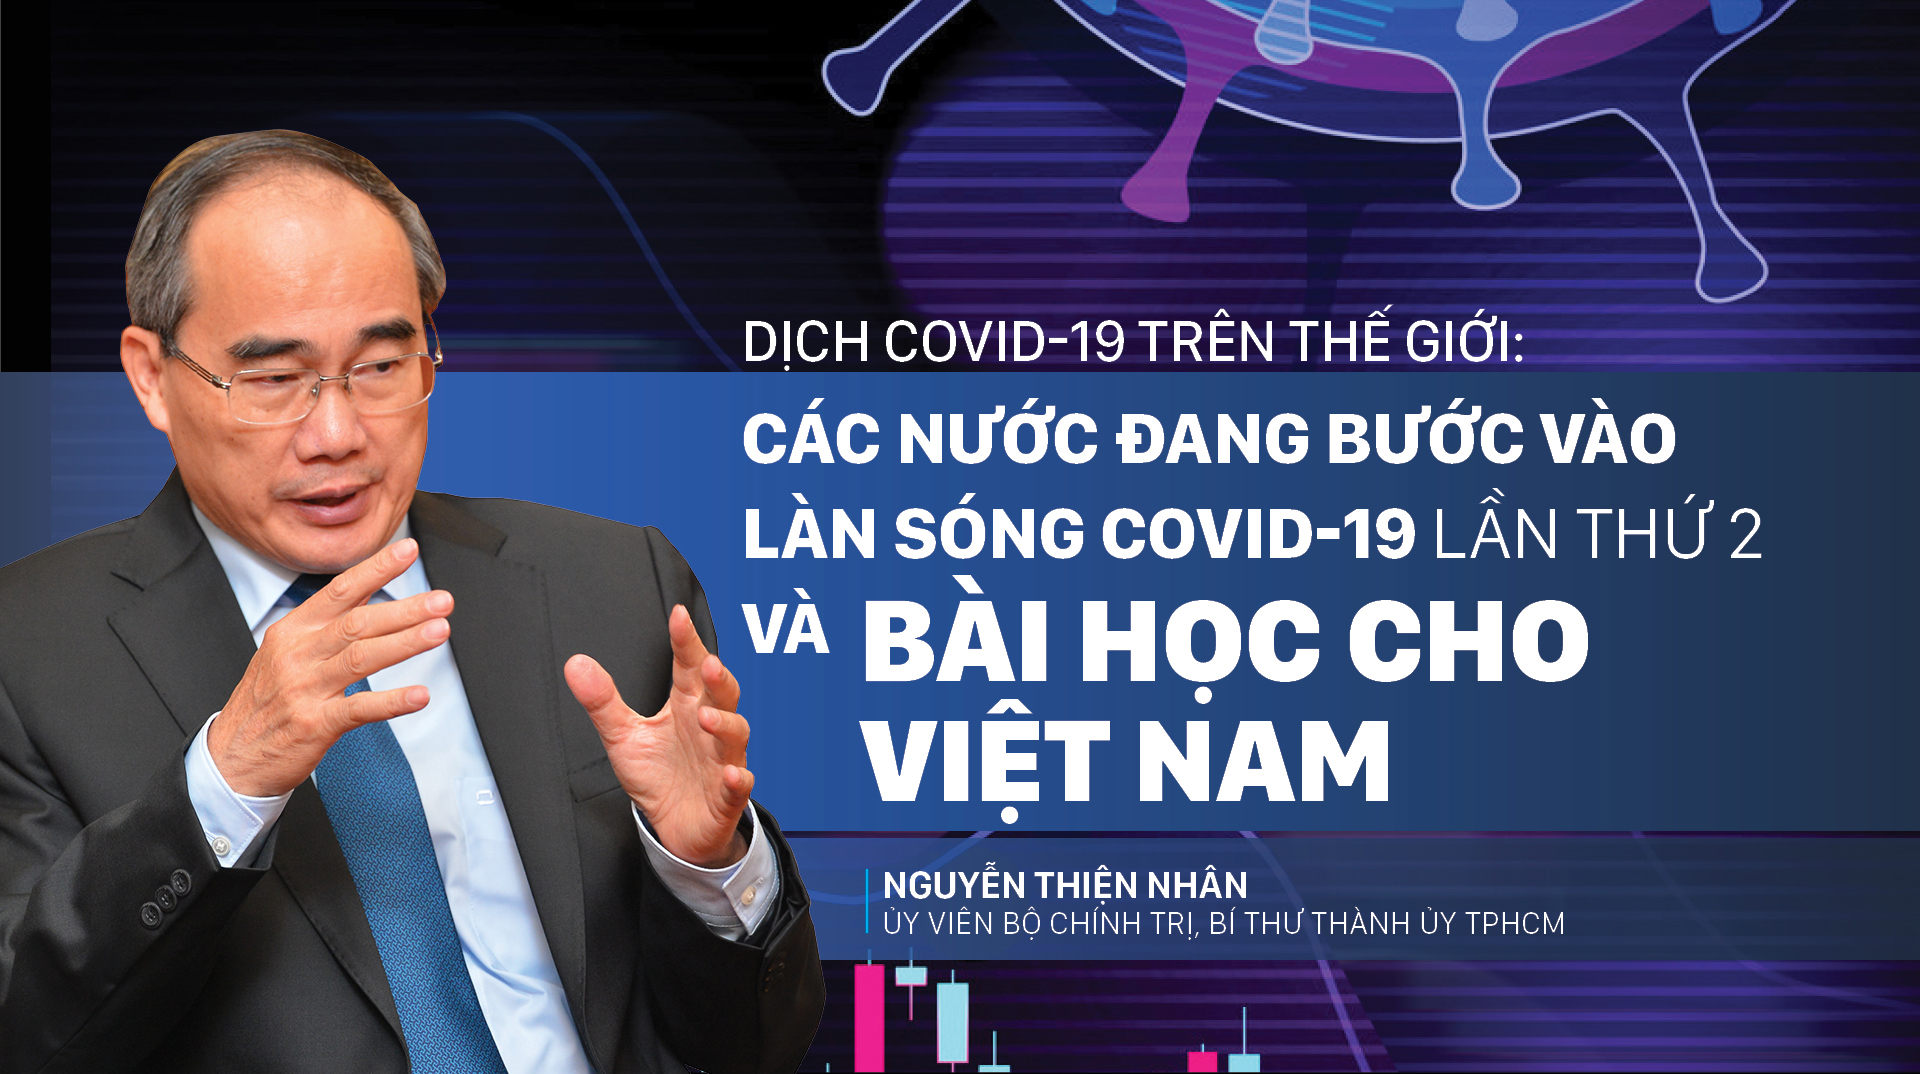 Dịch Covid-19 trên thế giới: Các nước đang bước vào làn sóng Covid-19 lần thứ 2 và bài học cho Việt Nam   